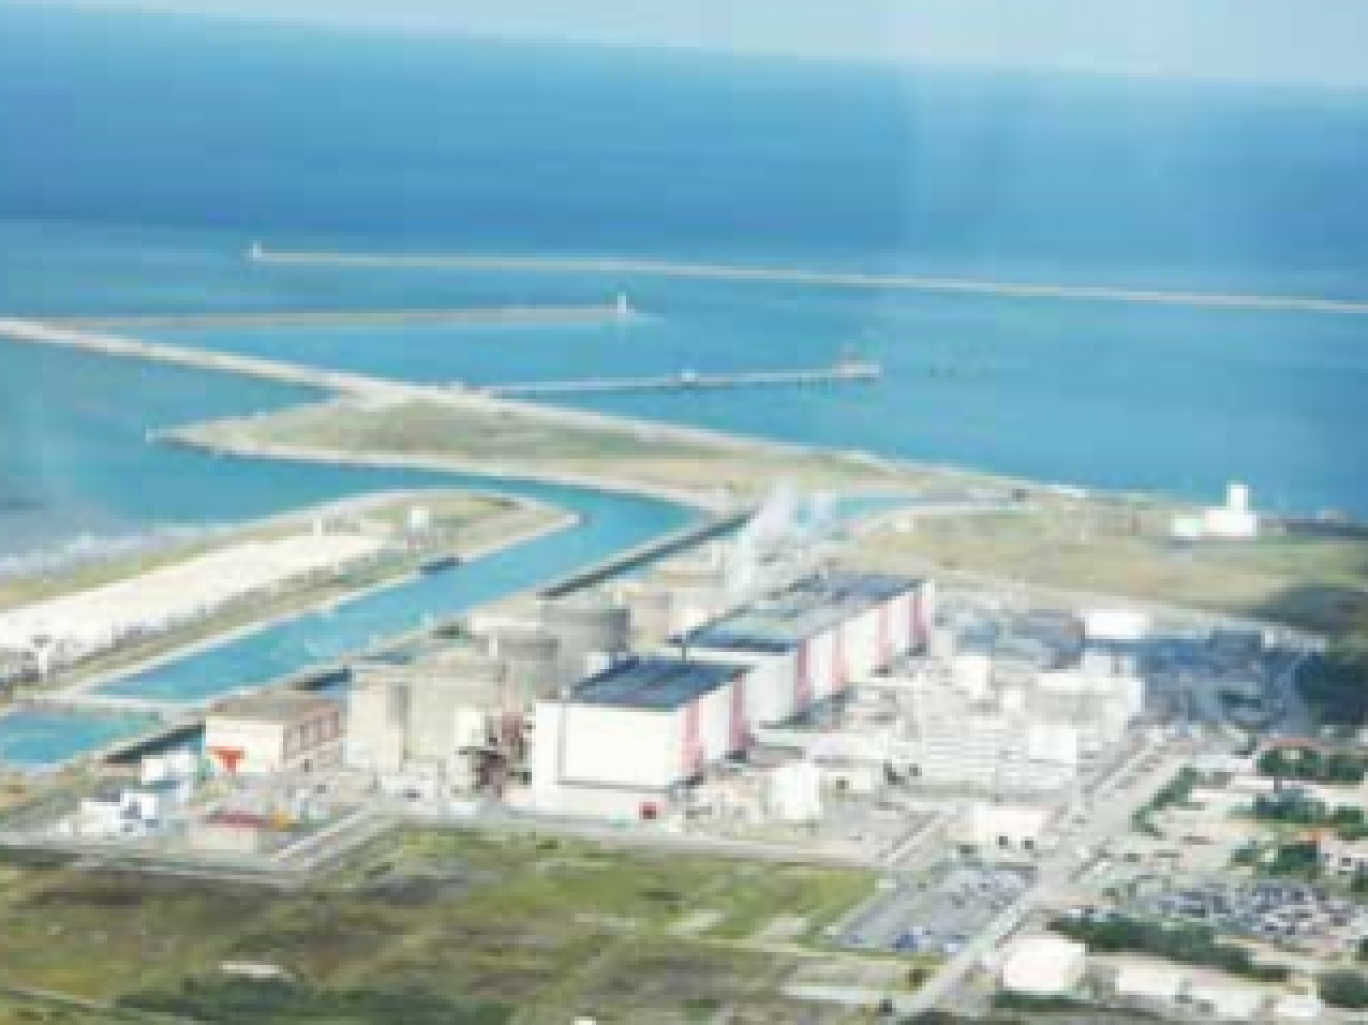 Cette campagne d’information concerne 22 sites industriels sur le littoral dunkerquois, dont la centrale nucléaire de Gravelines.